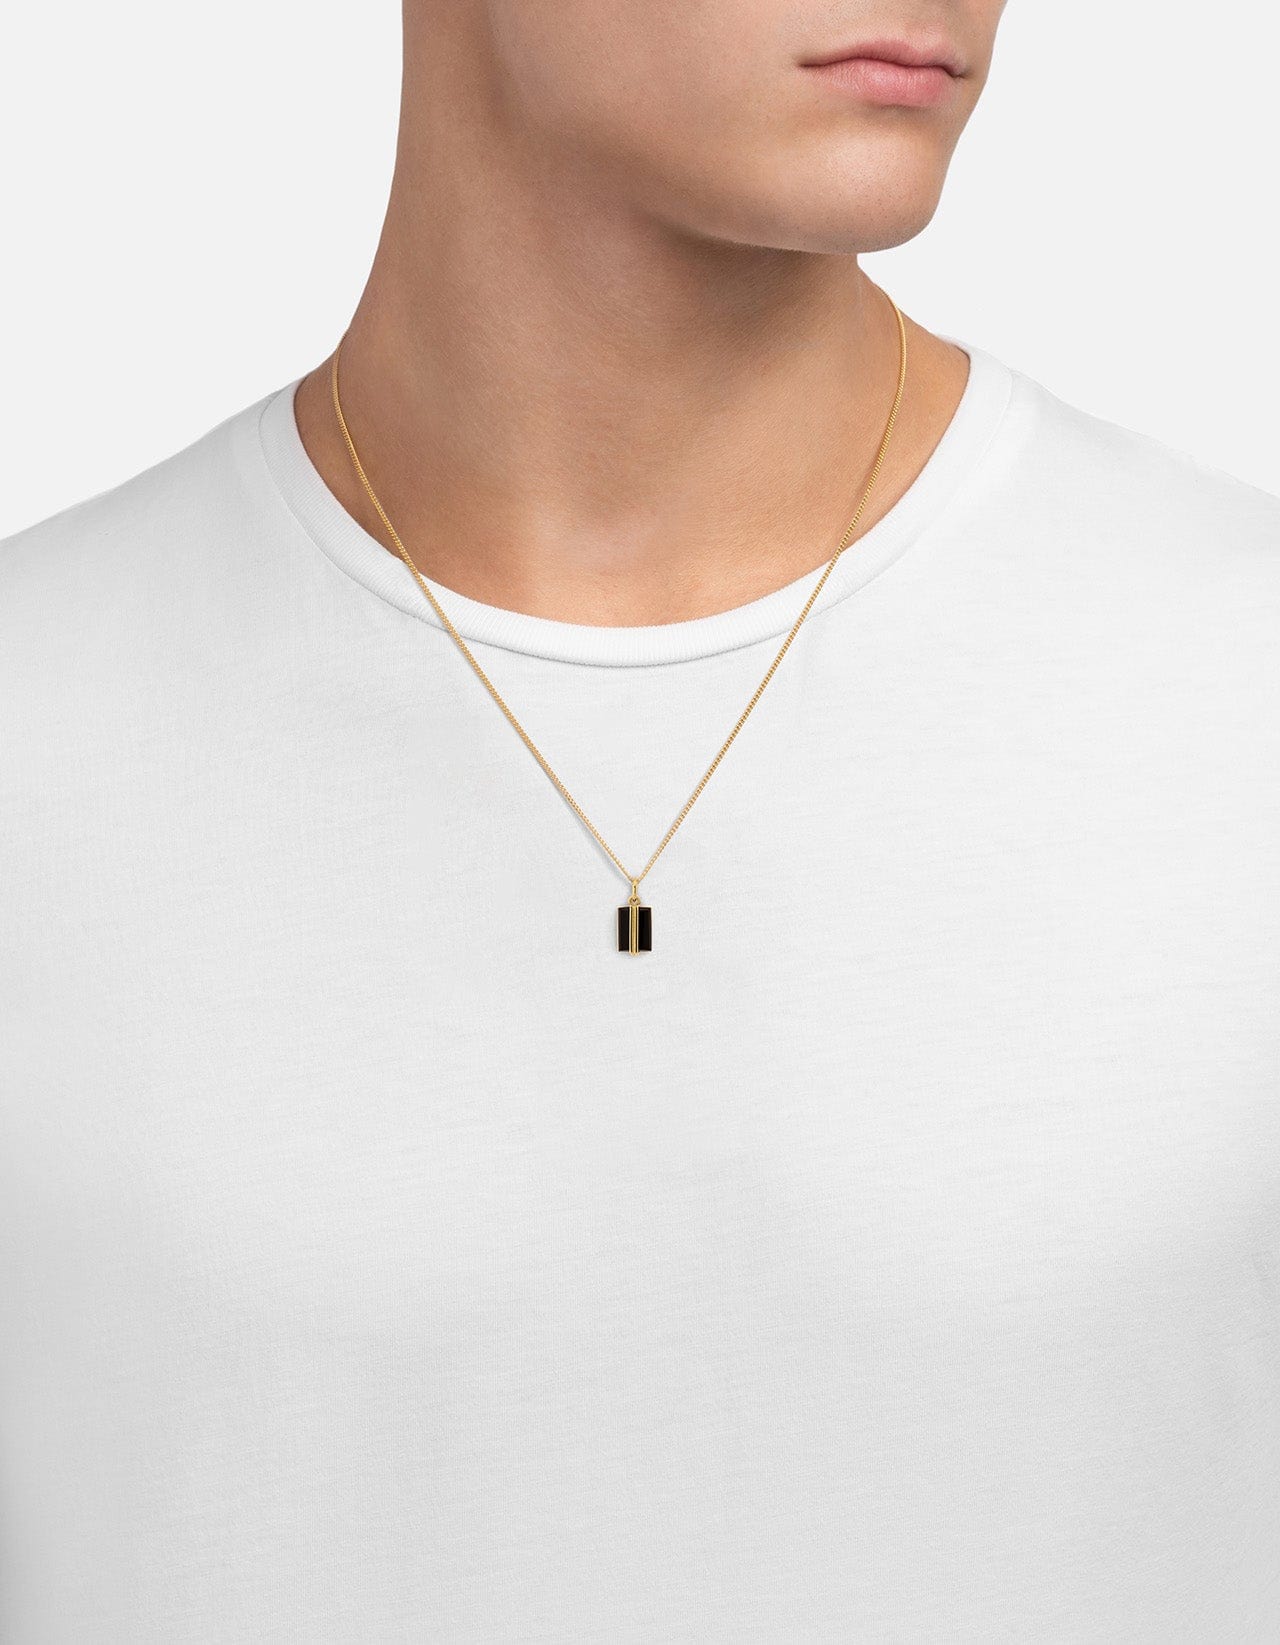 Paolo Onyx Pendant Necklace, Gold Vermeil | Men\'s Necklaces | Miansai